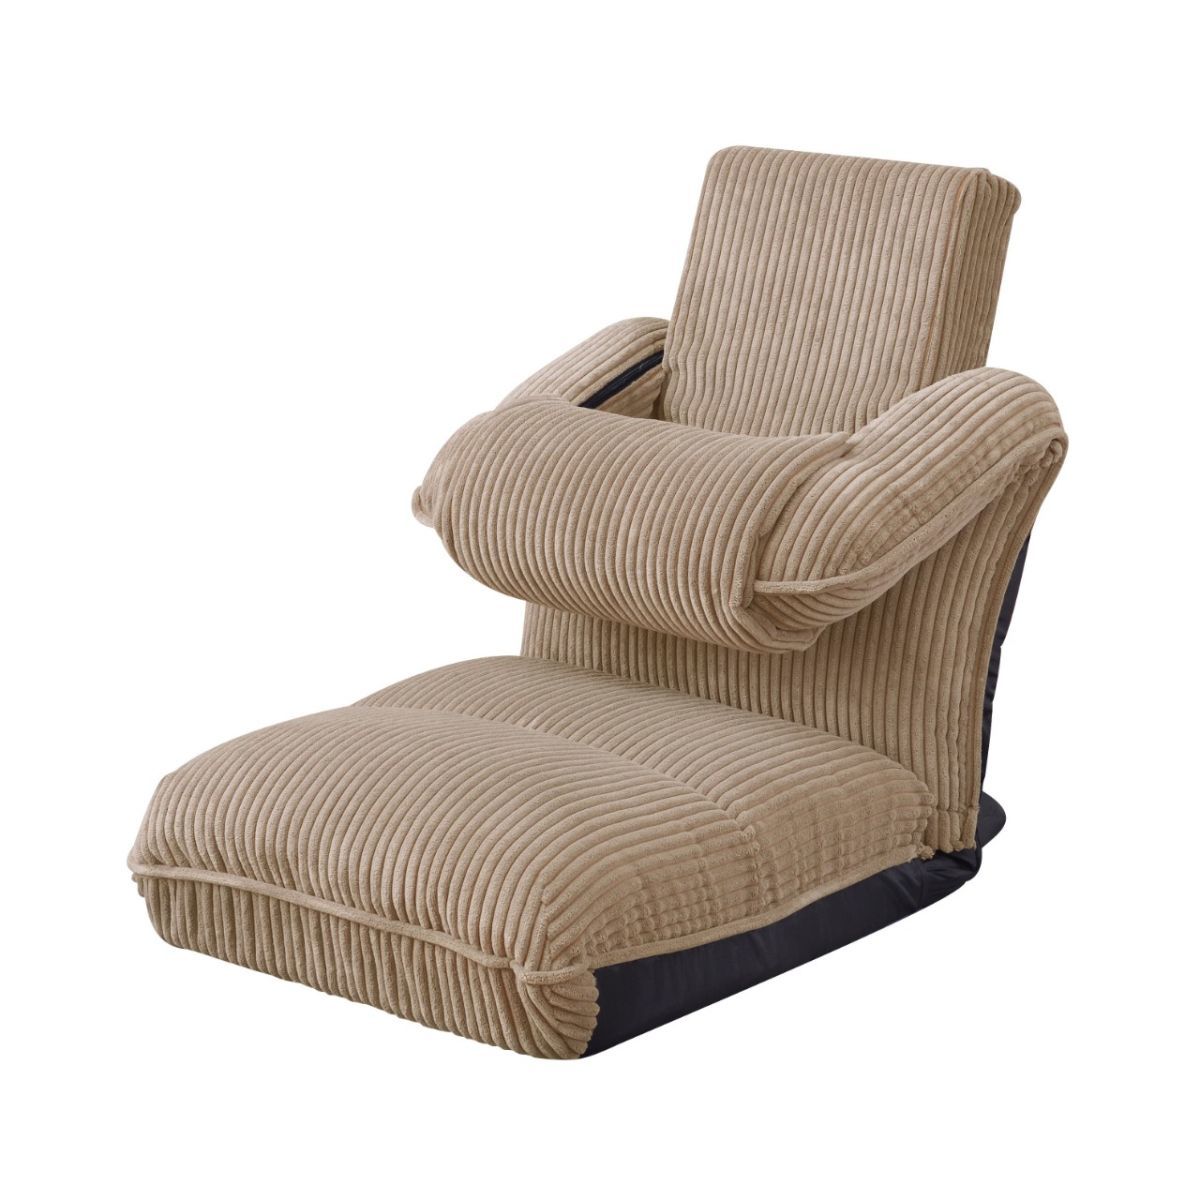 座椅子 W47×D70-126×H18-76×SH18 リクライニング ファブリック ベージュ 北欧 おしゃれ 新生活 一人暮らし 国内発送 THC-55BE